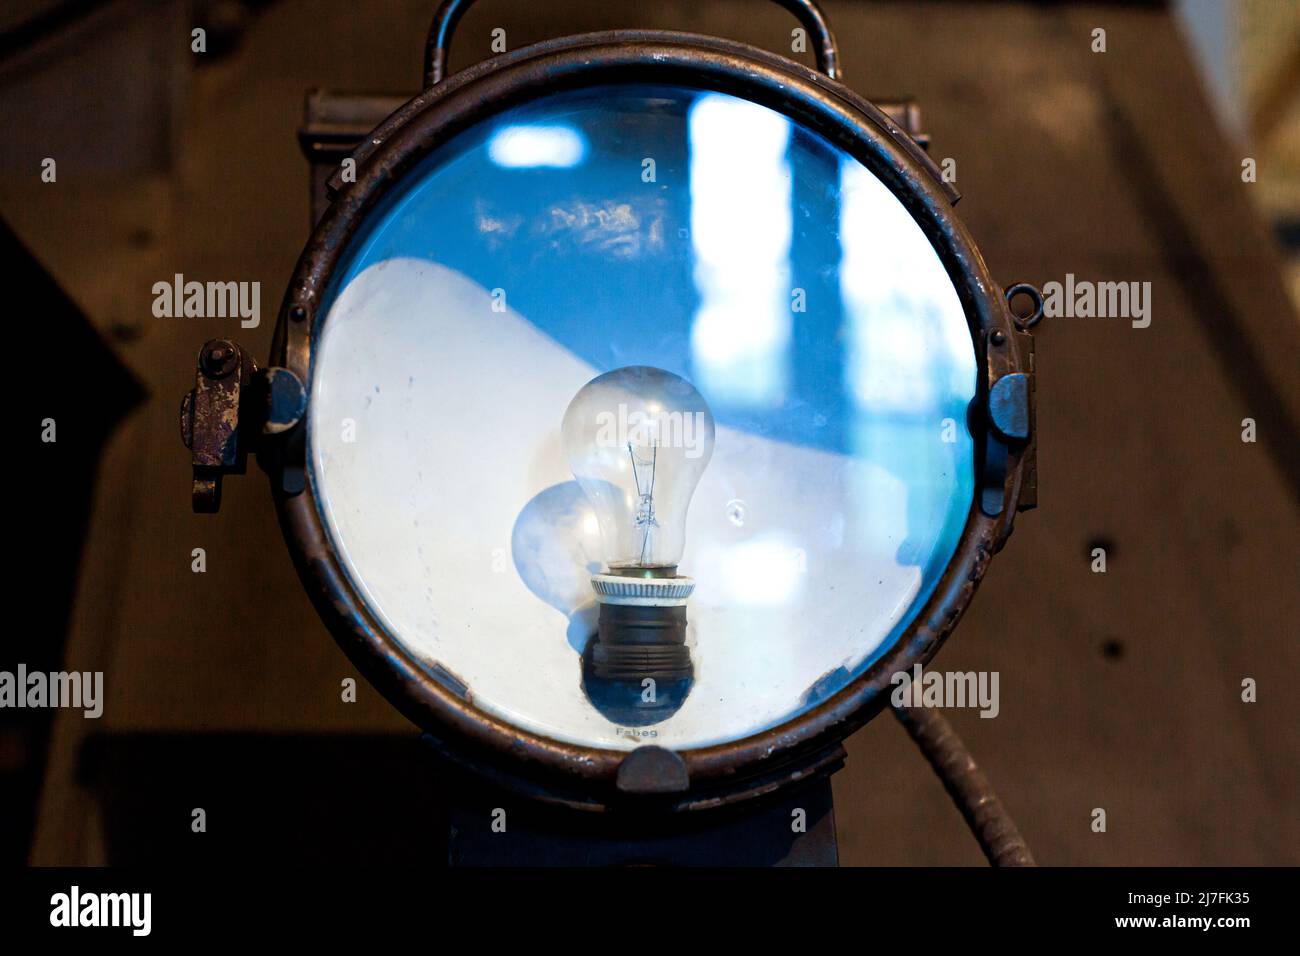 Прожекторы локомотивов. Лампа прожектора электровоза. Лампа прожектора тепловоза. Паровозный прожектор. Как называется прожектор у Локомотива.